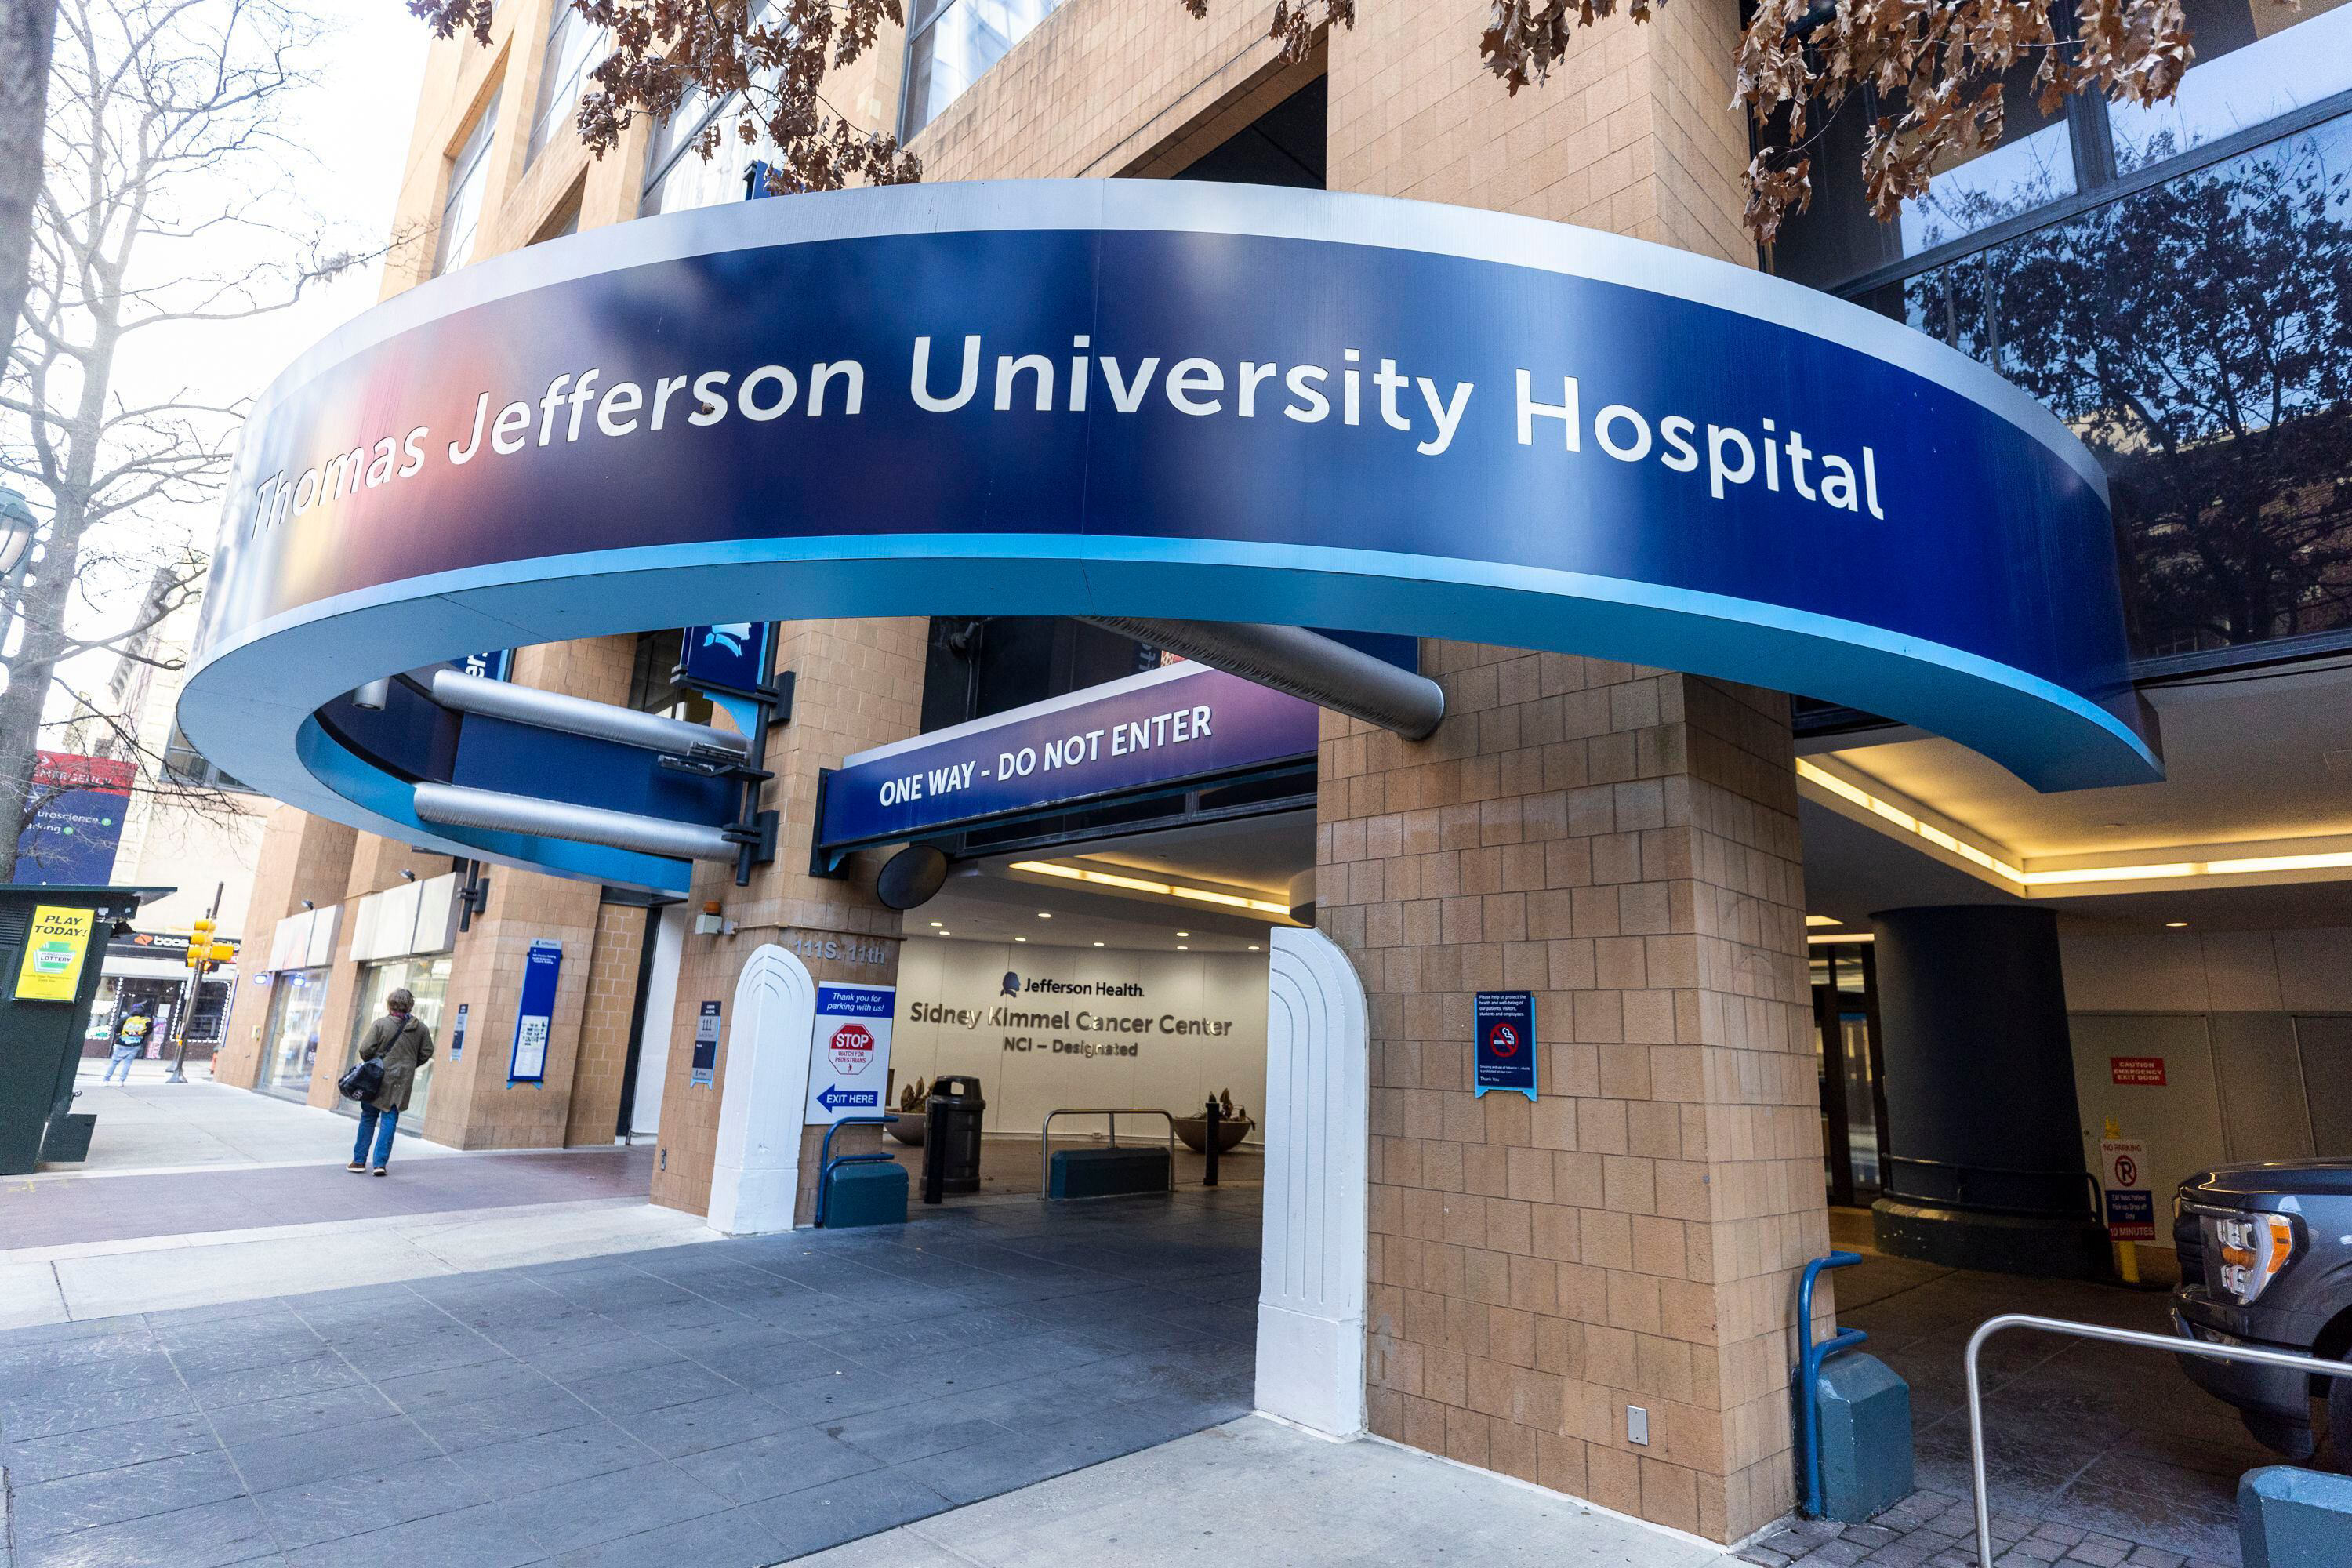 Thomas Jefferson University Hospital cited for elderly patient’s escape